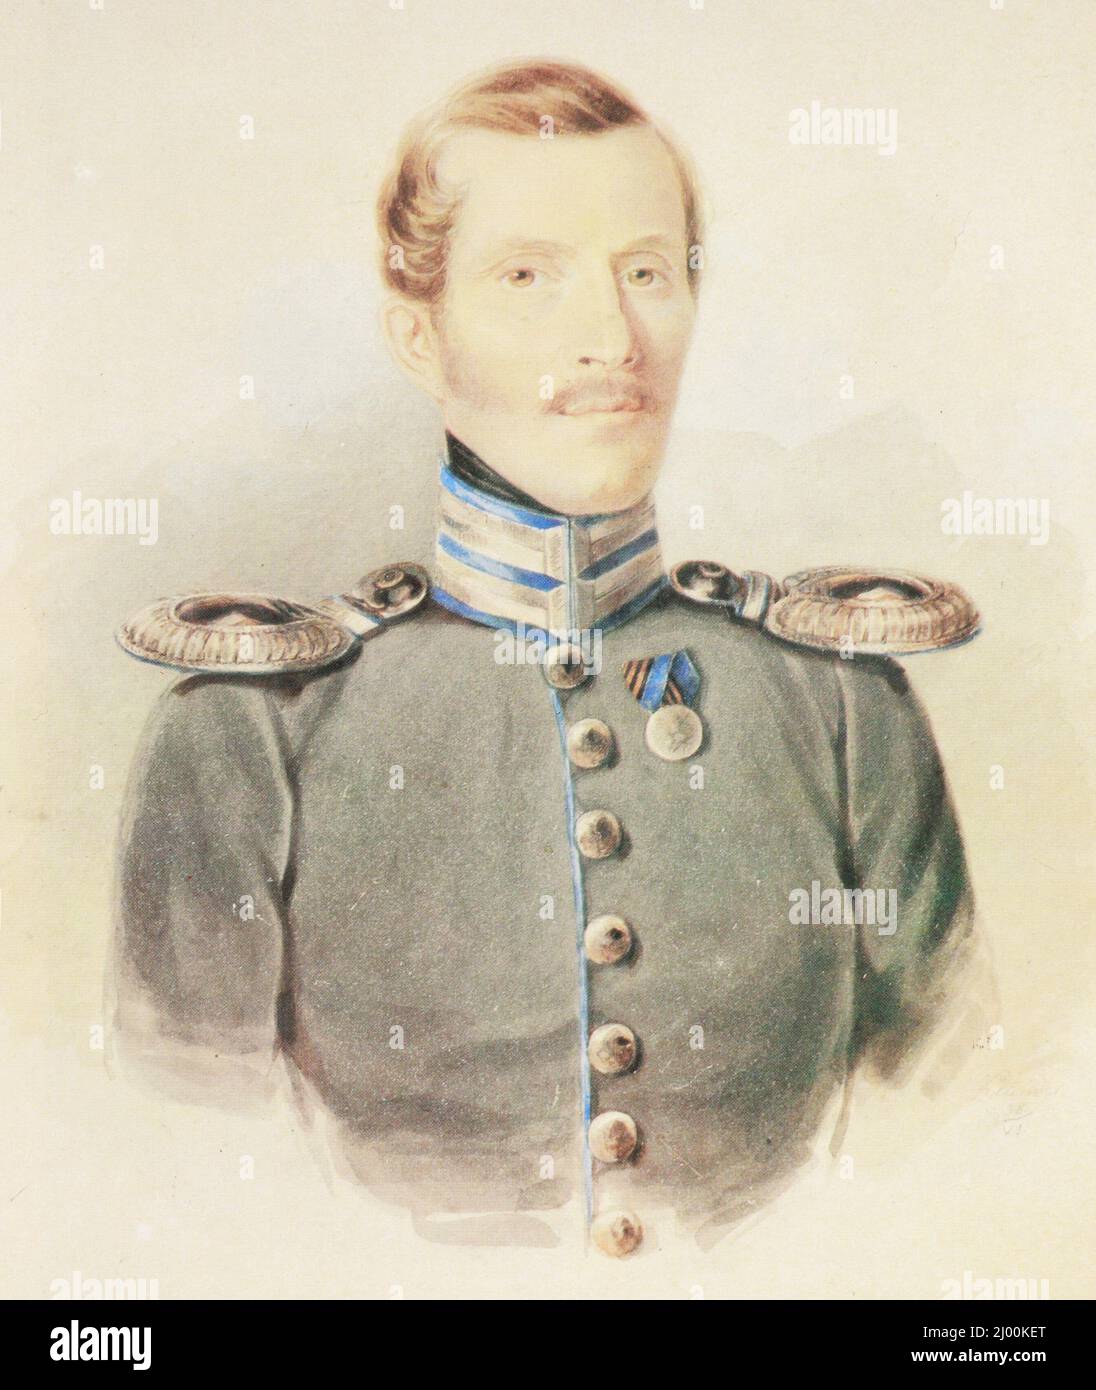 Porträt von Kapitän Panov - Kommandant der Furschtat-Halbkompanie des Husaren-Regiments der Rettungsgarde der russischen Armee. Gemälde von 1838. Stockfoto